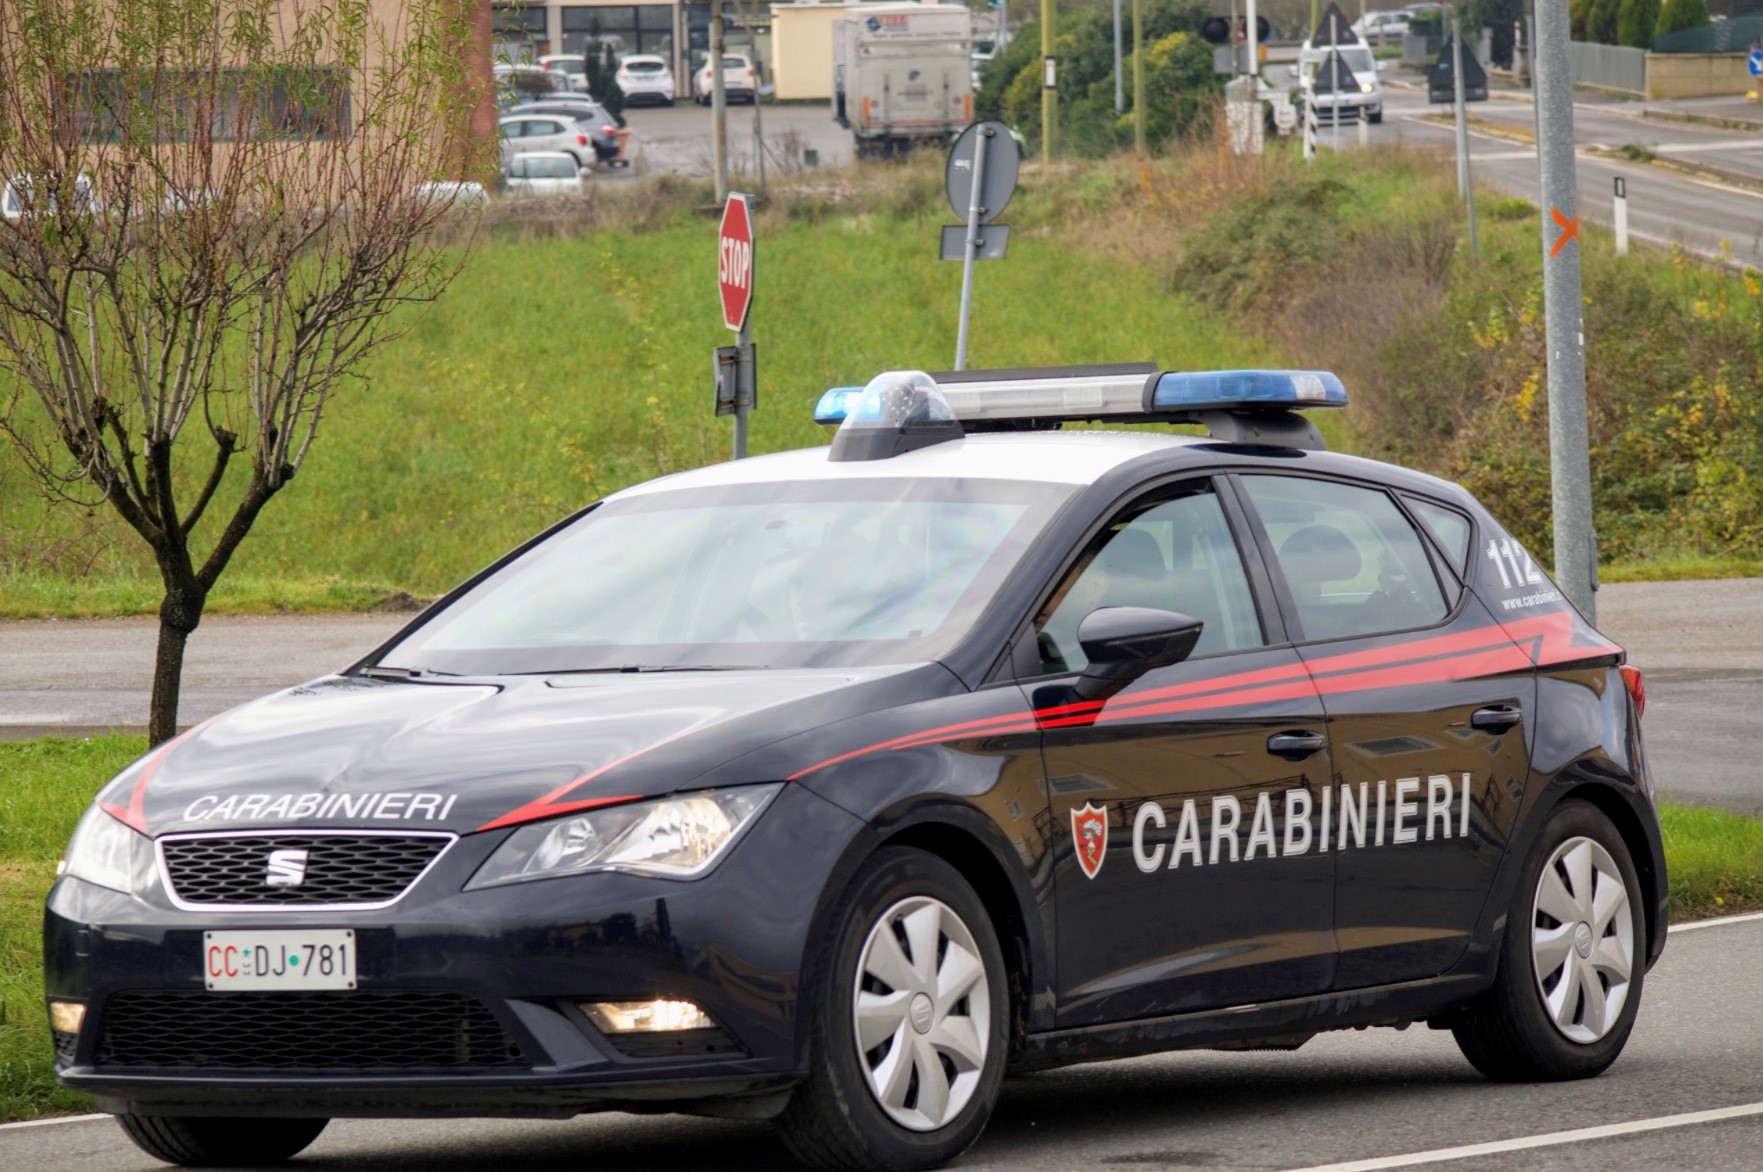 Castel Focognano: carabinieri con la gente, giovedì 17 novembre l’incontro a Rassina